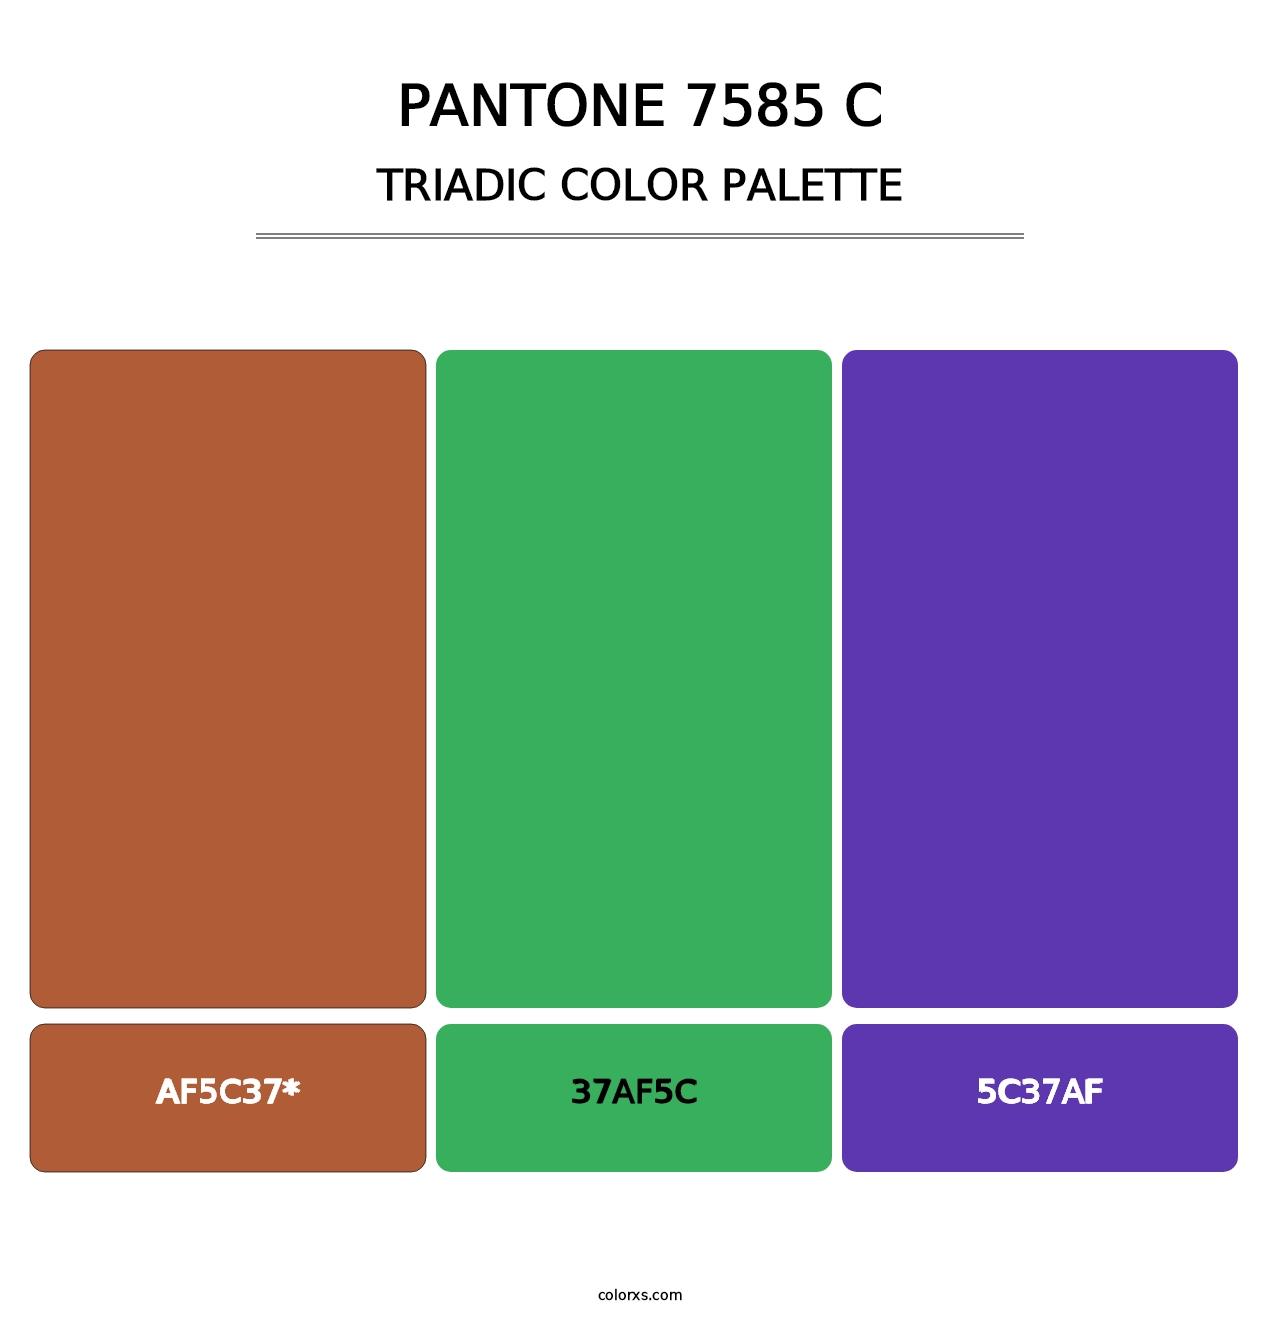 PANTONE 7585 C - Triadic Color Palette